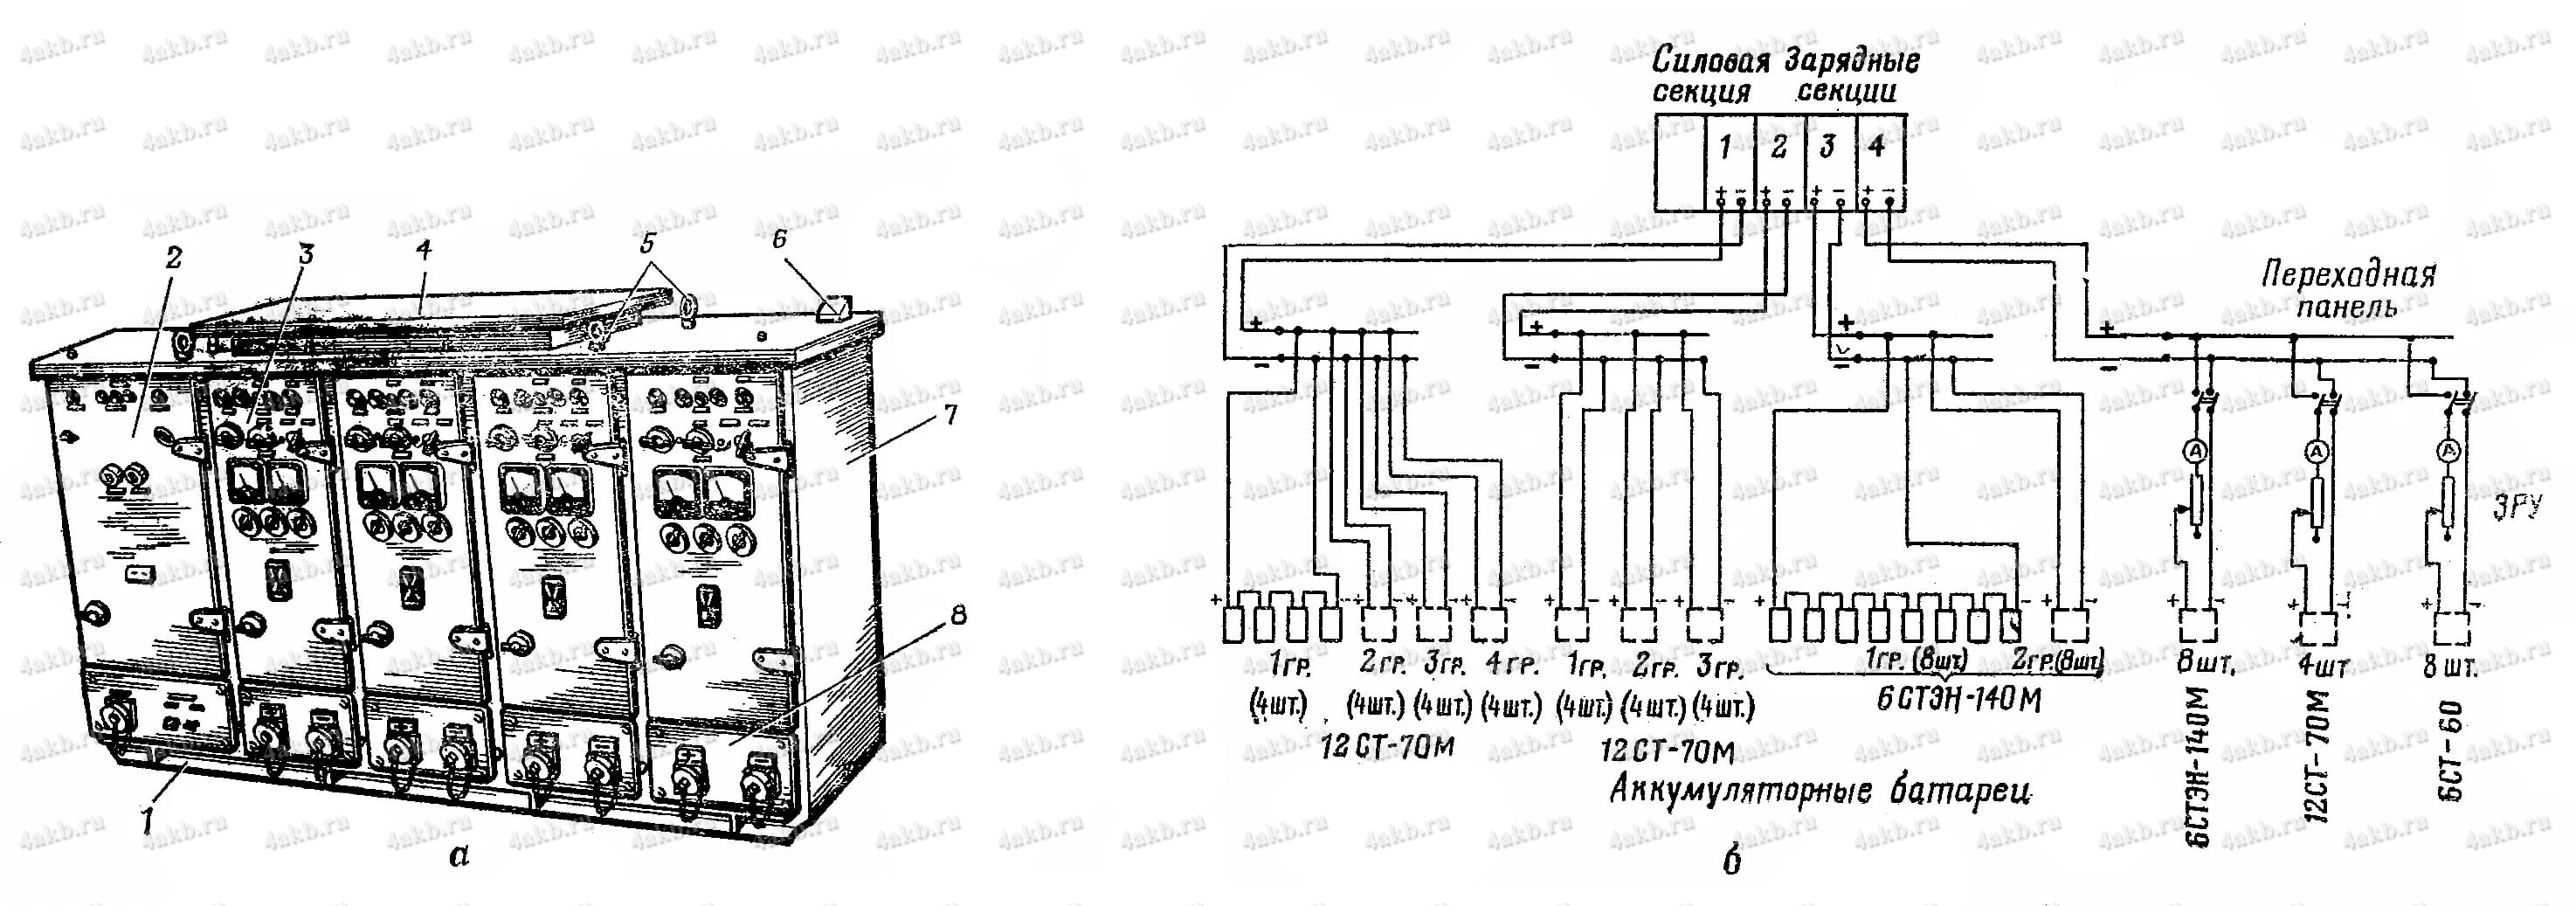 Кремниевый автоматизированный выпрямитель ВАК-12-115